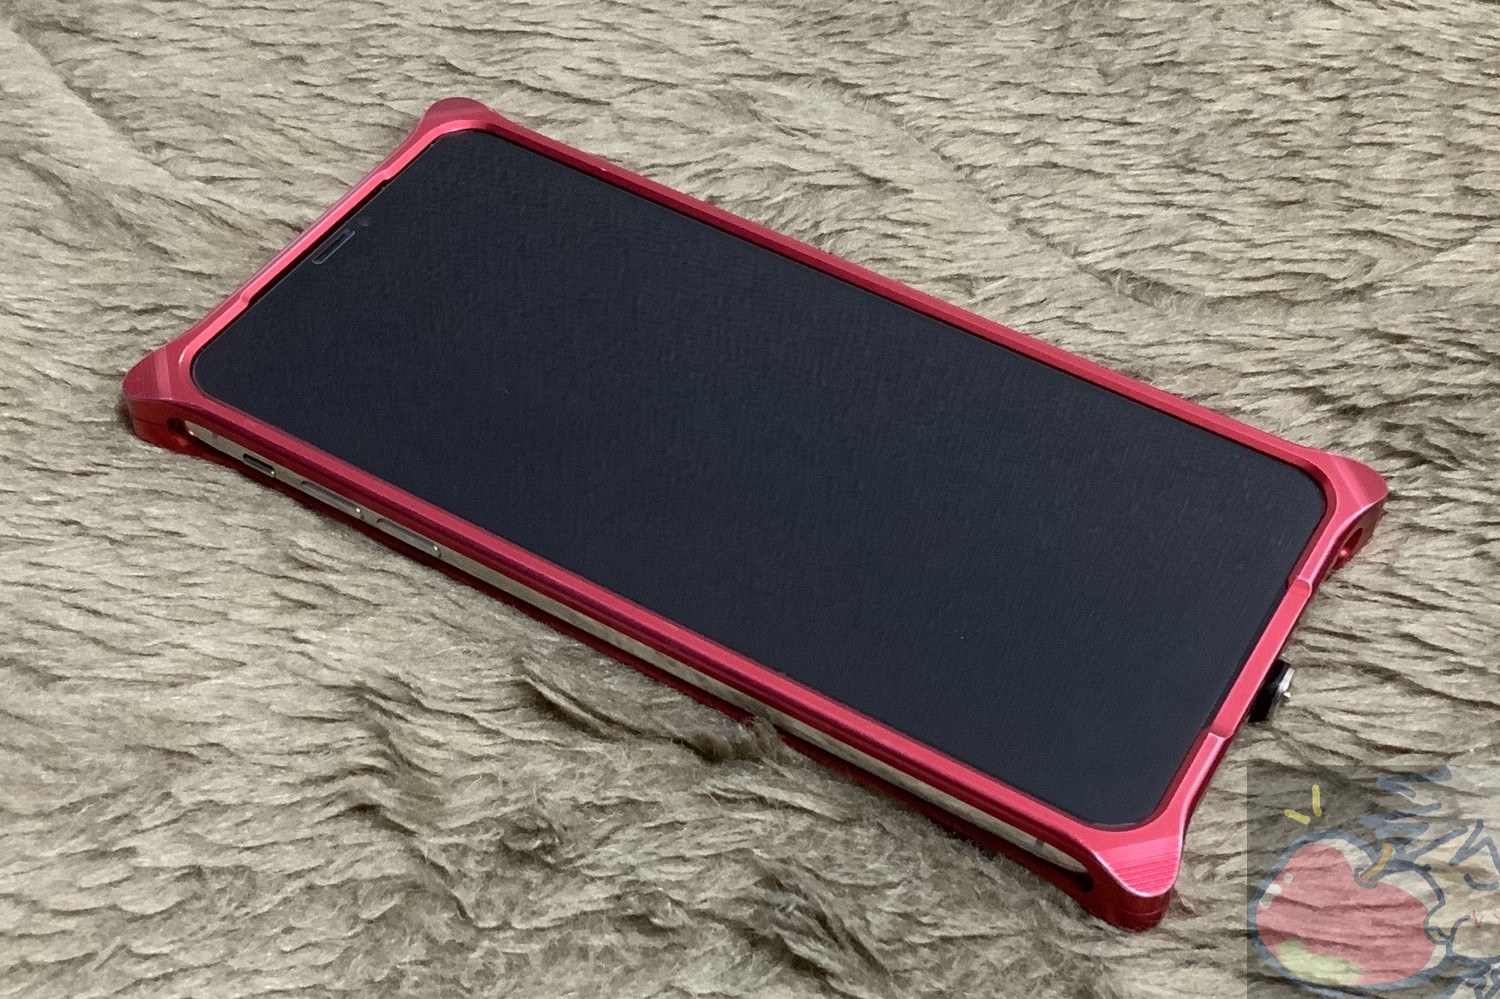 【史上最も激安】 Elegante Posh iPhone 11 XR 用 ハードケース 08.ダークレッド 本革 リング付き 360度回転 角度調整 スタンド機能 落下防止 牛革 上質 軽量 エレガンテブランド スマホケース 全8色